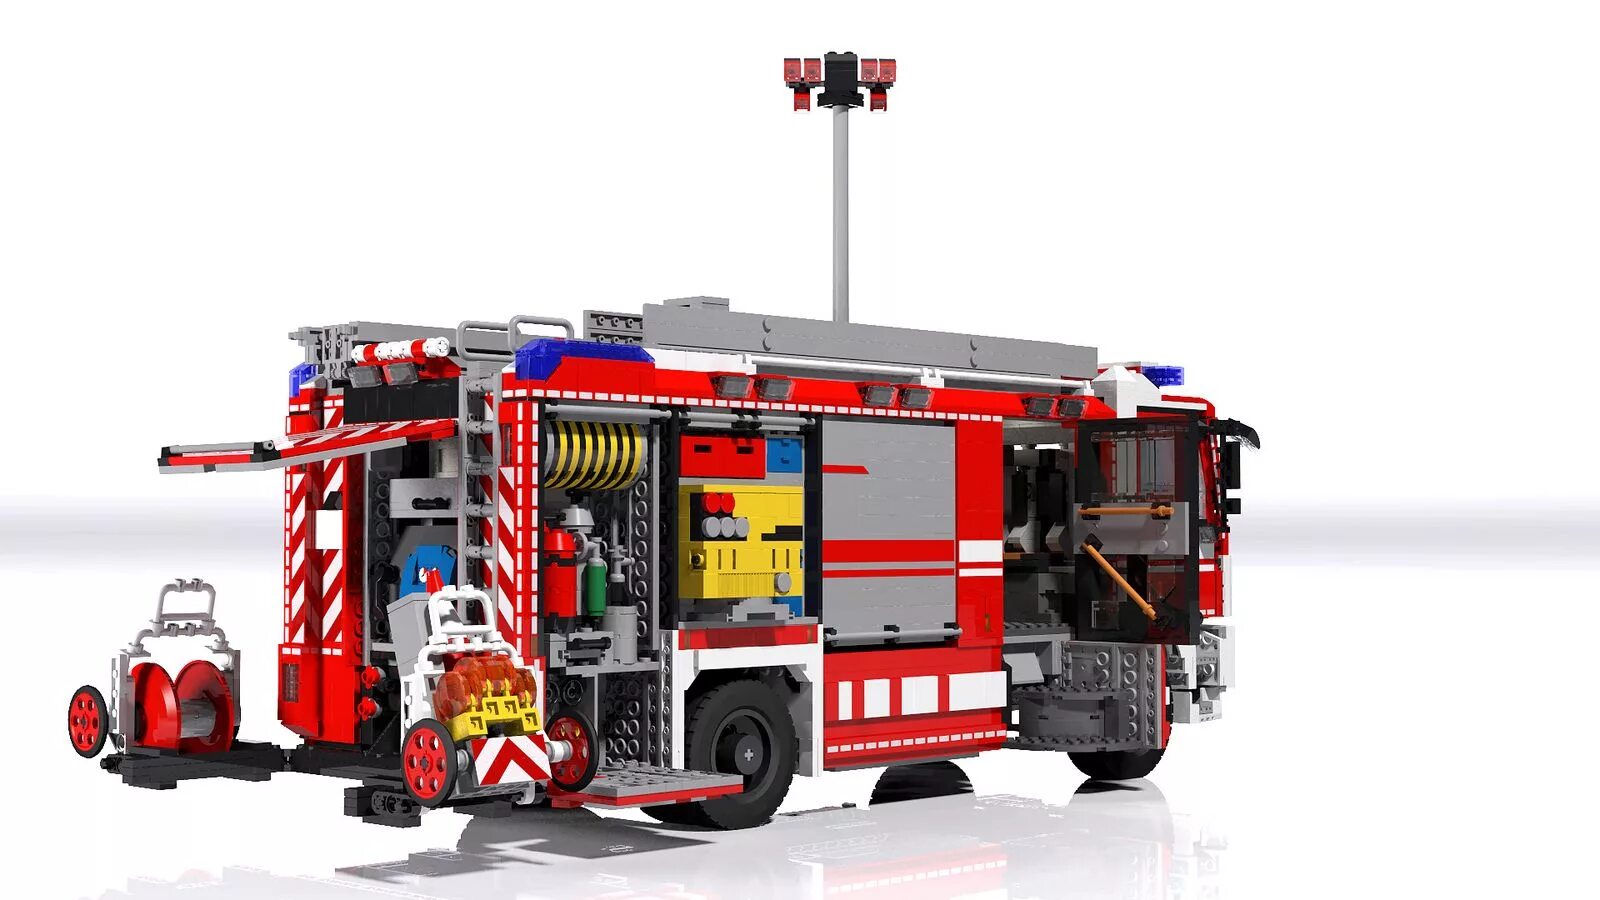 Пожарная машина Rosenbauer игрушка.